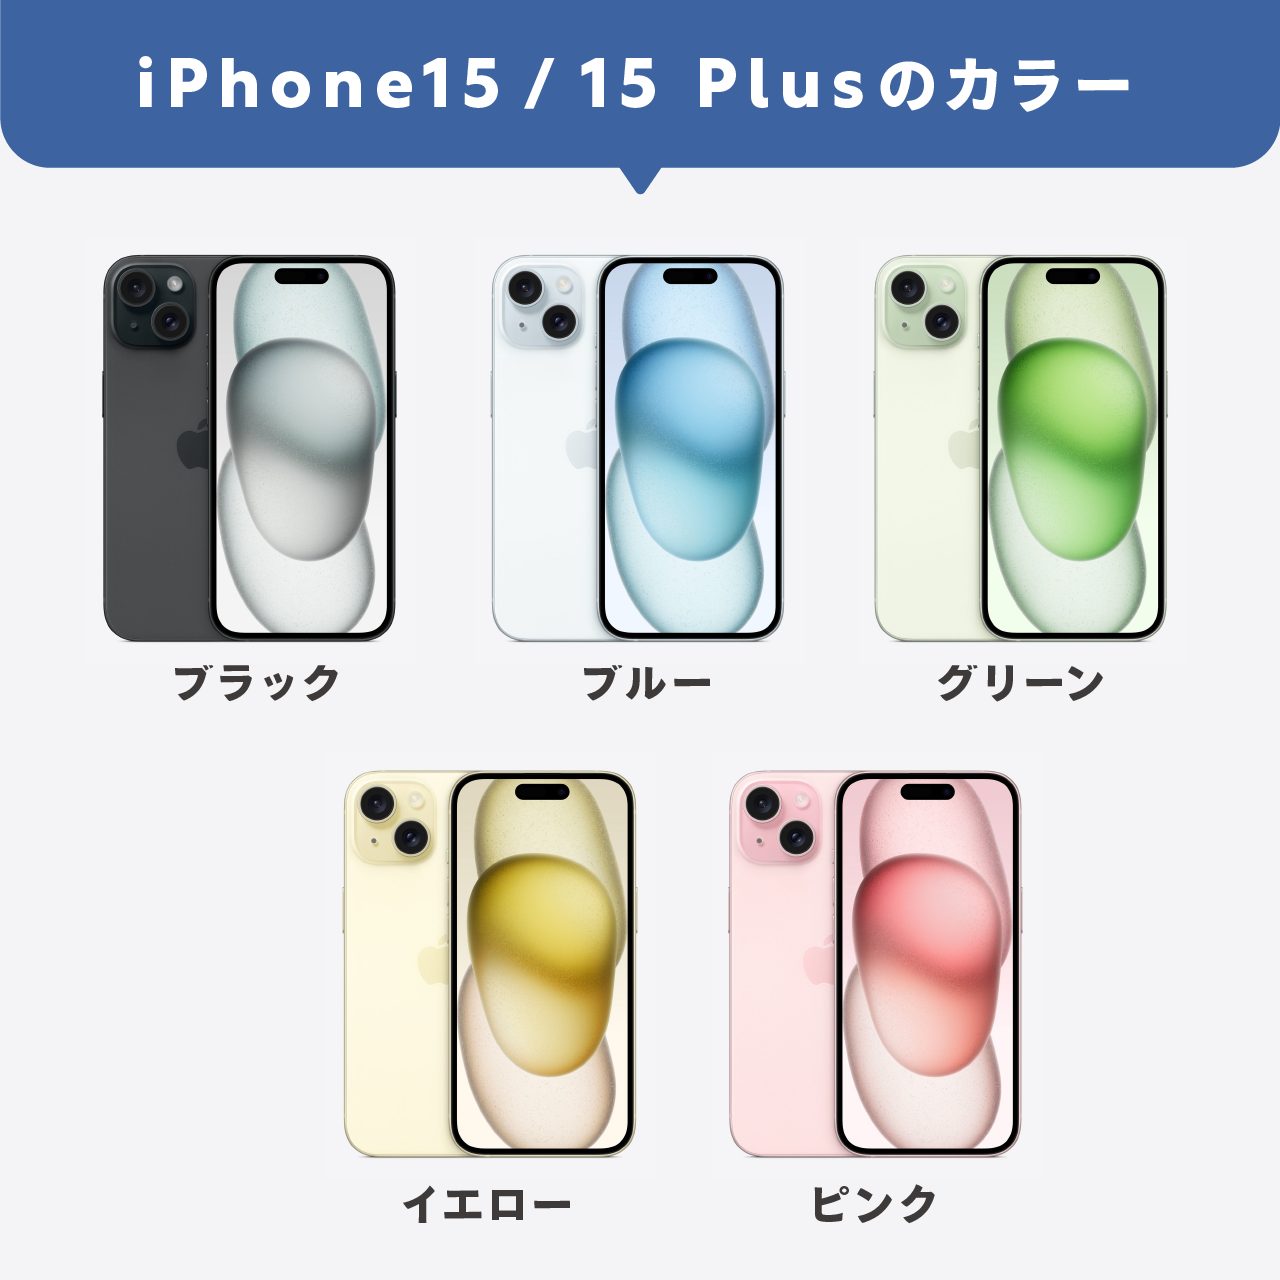 iPhone15/15Plusのカラー